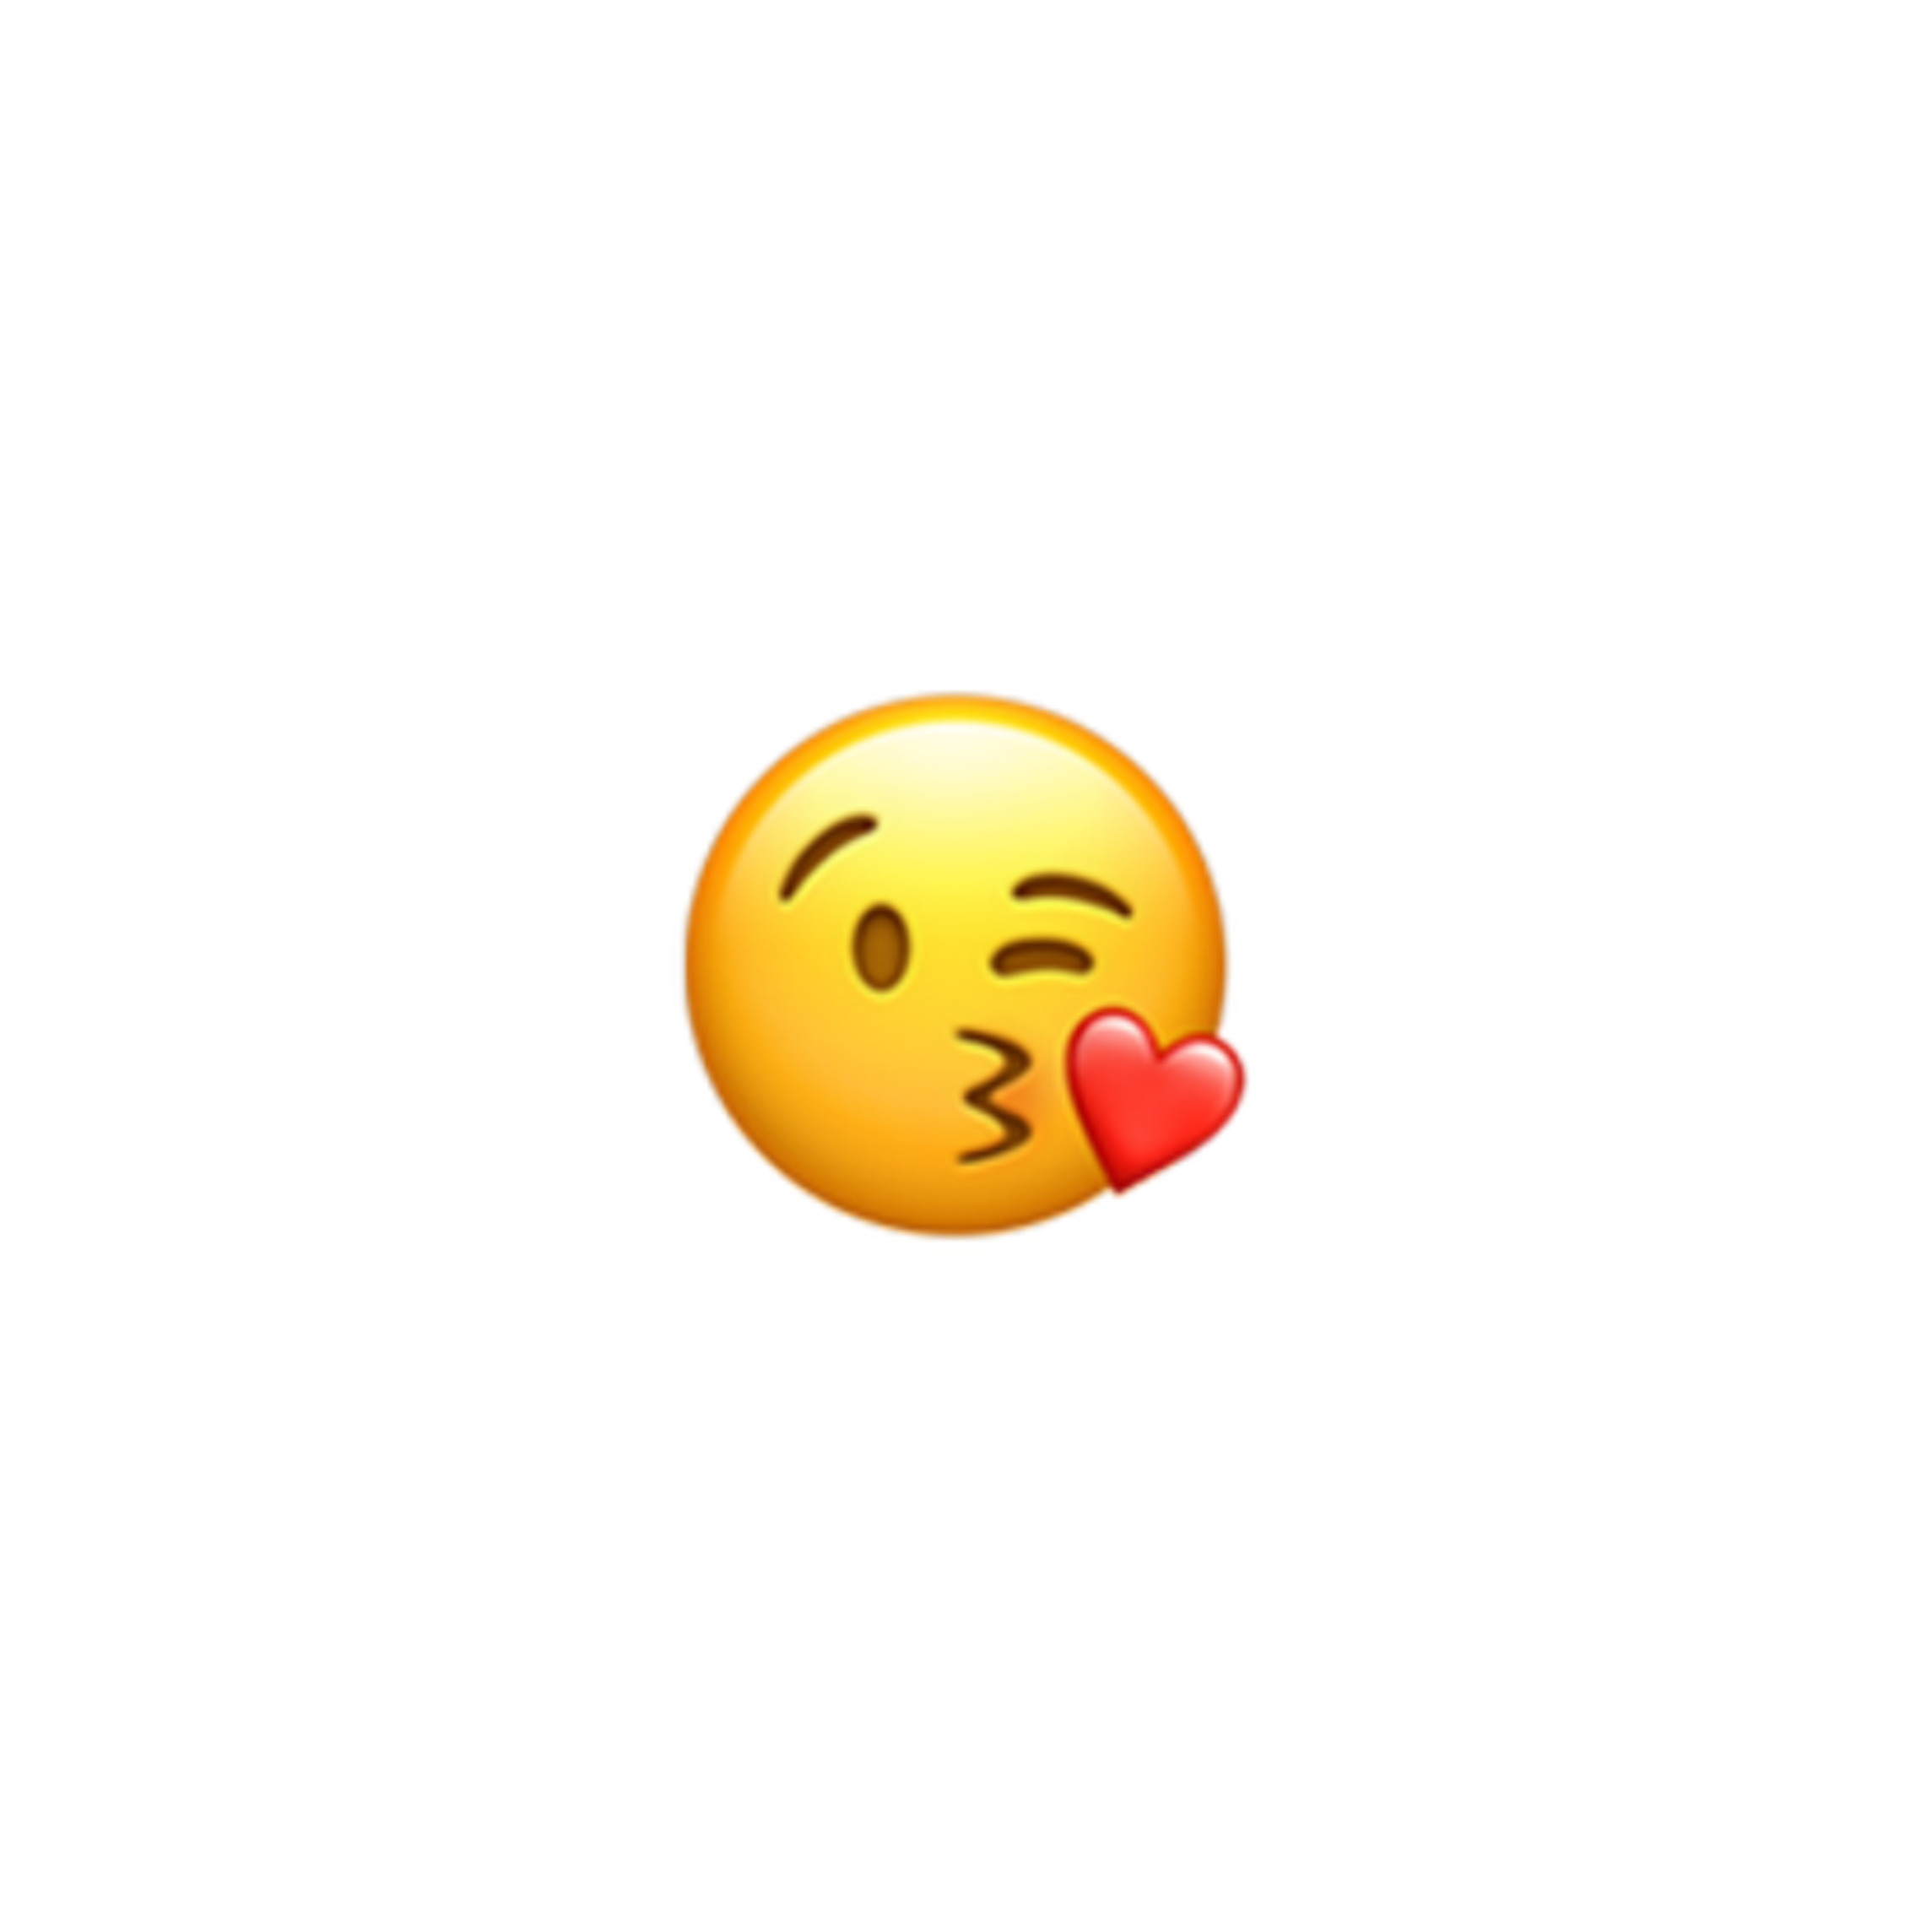 freetoedit kiss muah edit sticker emoji sticker by @ffl0w3rr.